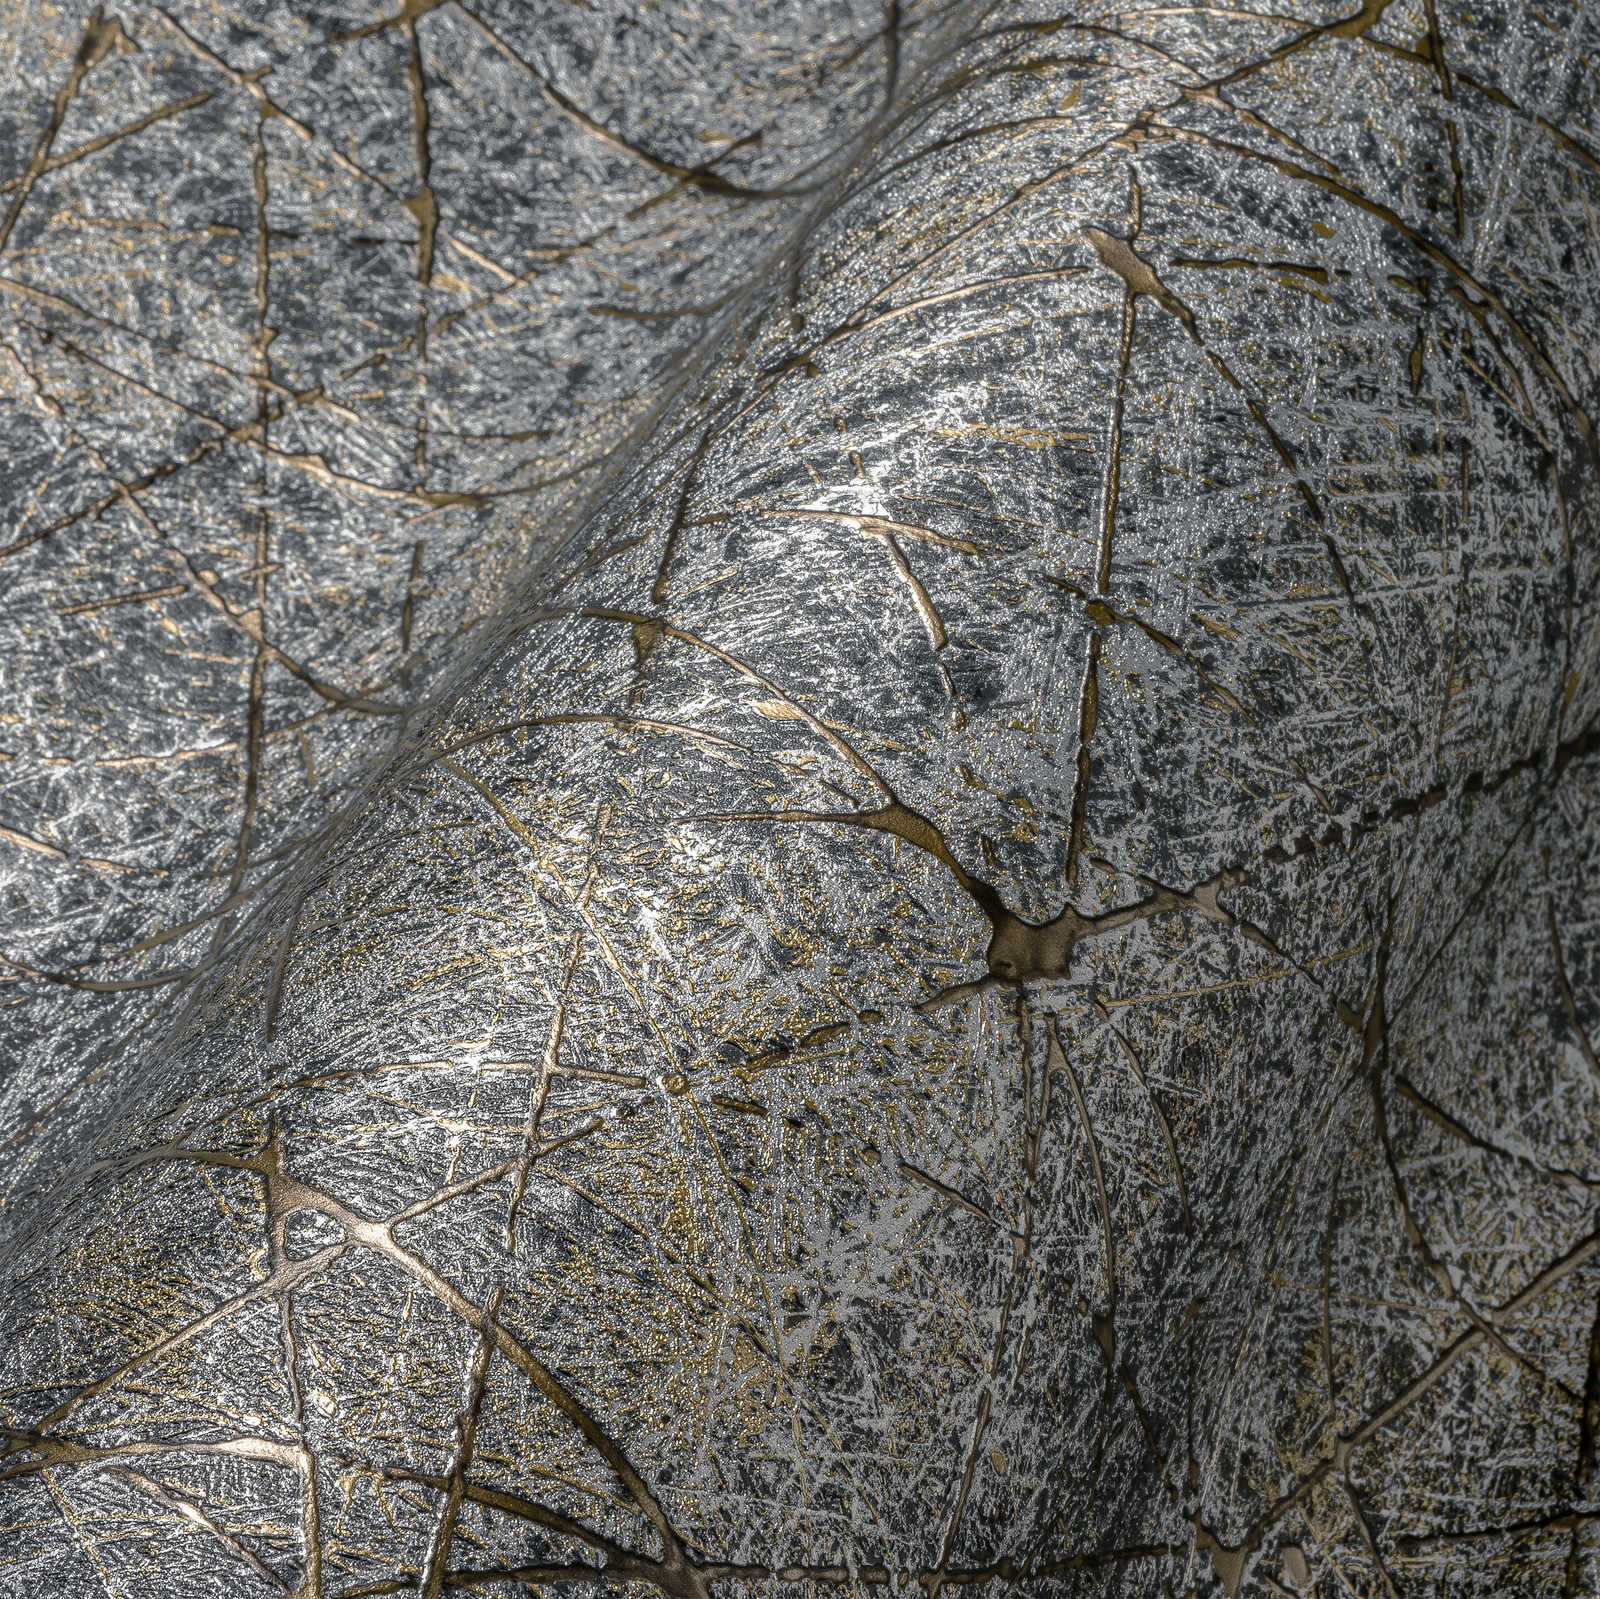             Vliesbehang met abstract grafisch patroon - zwart, goud, zilver
        